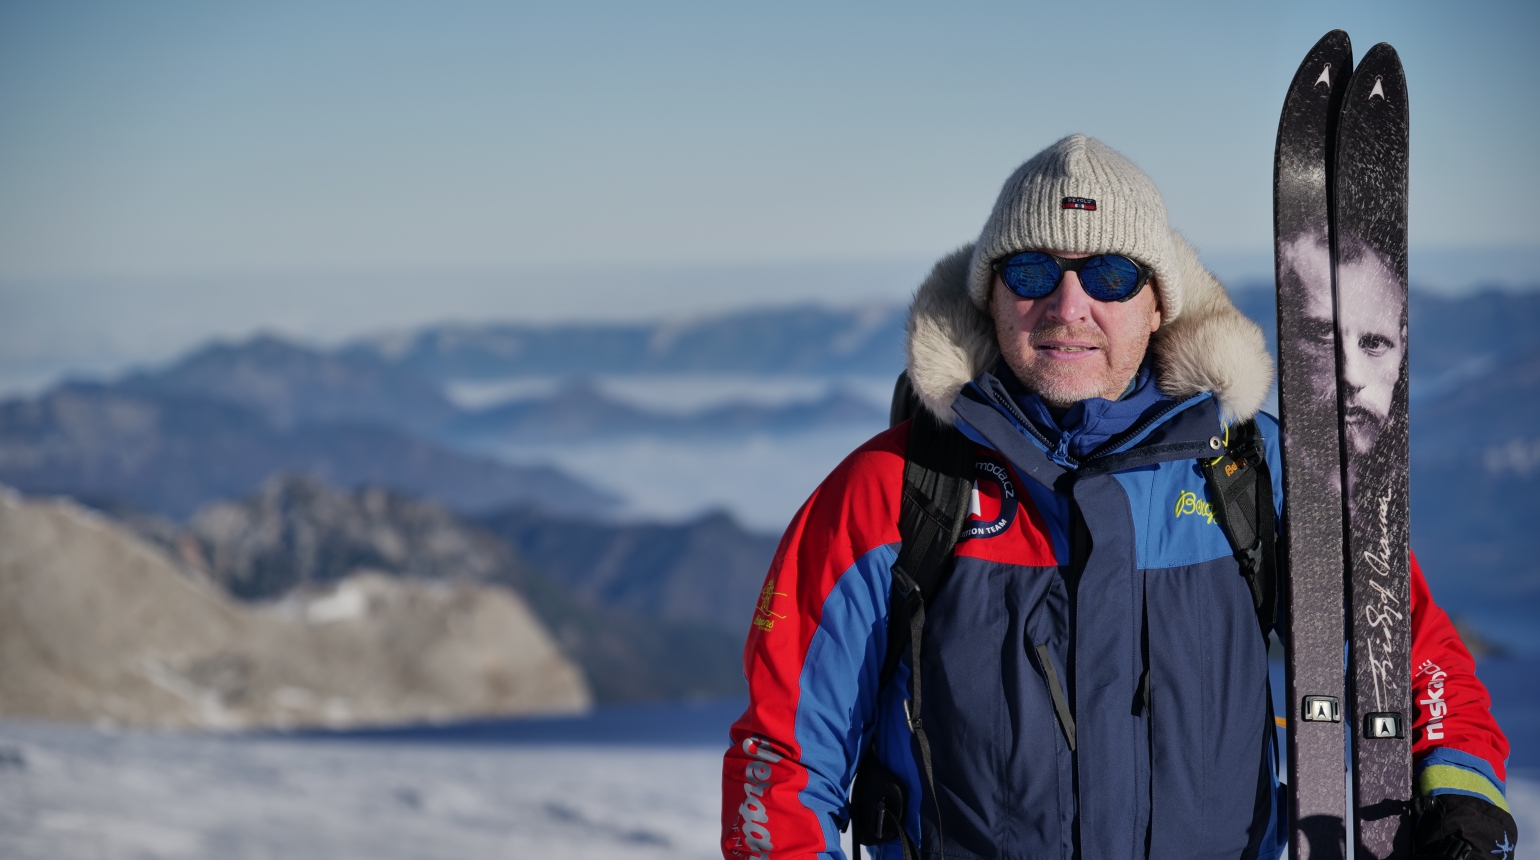 Polárník a režisér Petr Horký vyráží na nejvyšší horu Antarktidy a jižní pól